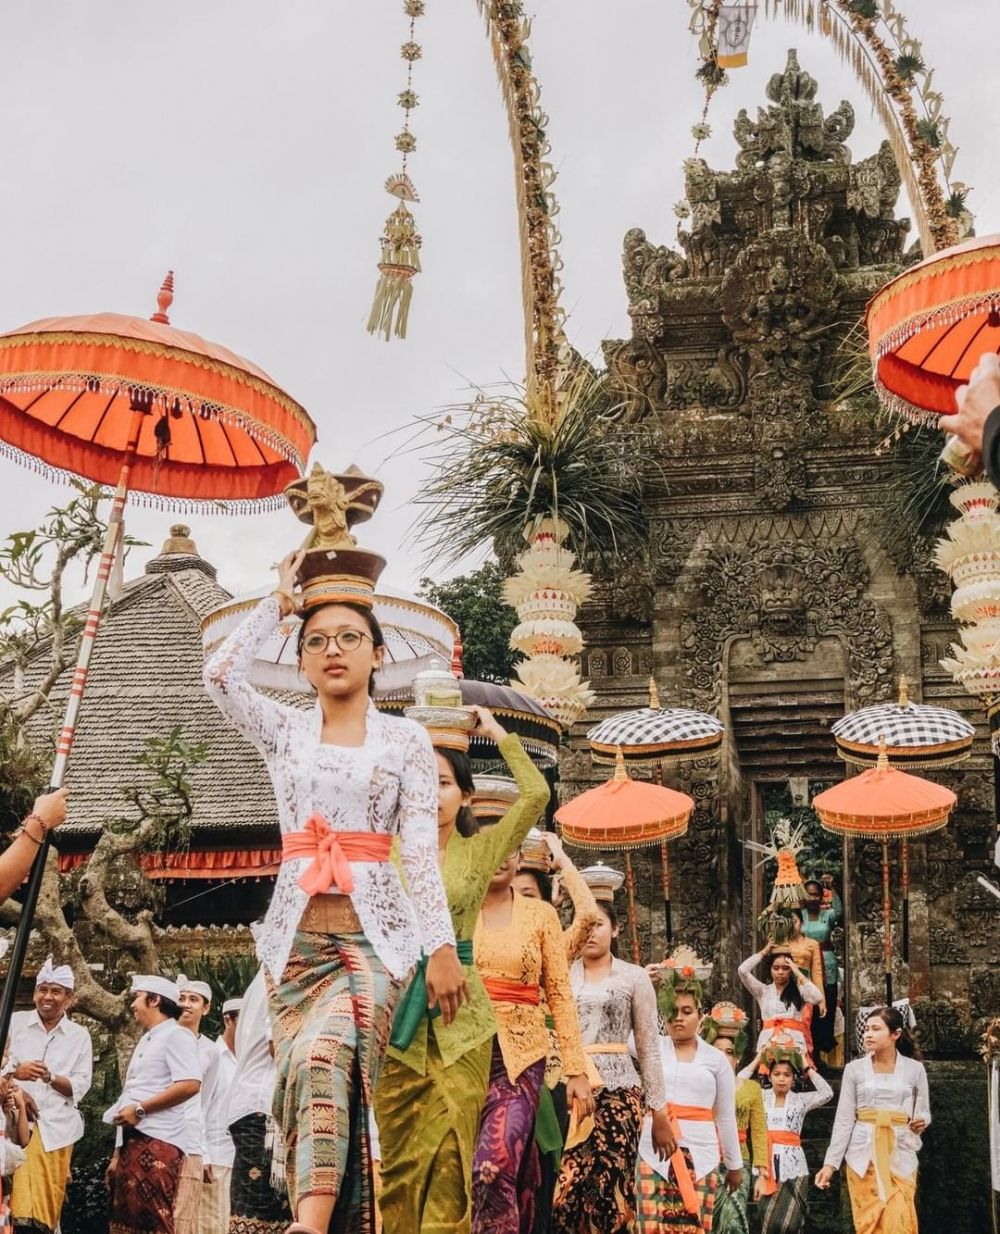 5 Wisata Festival Budaya Indonesia Yang Terpopuler Dengan Makna Yang